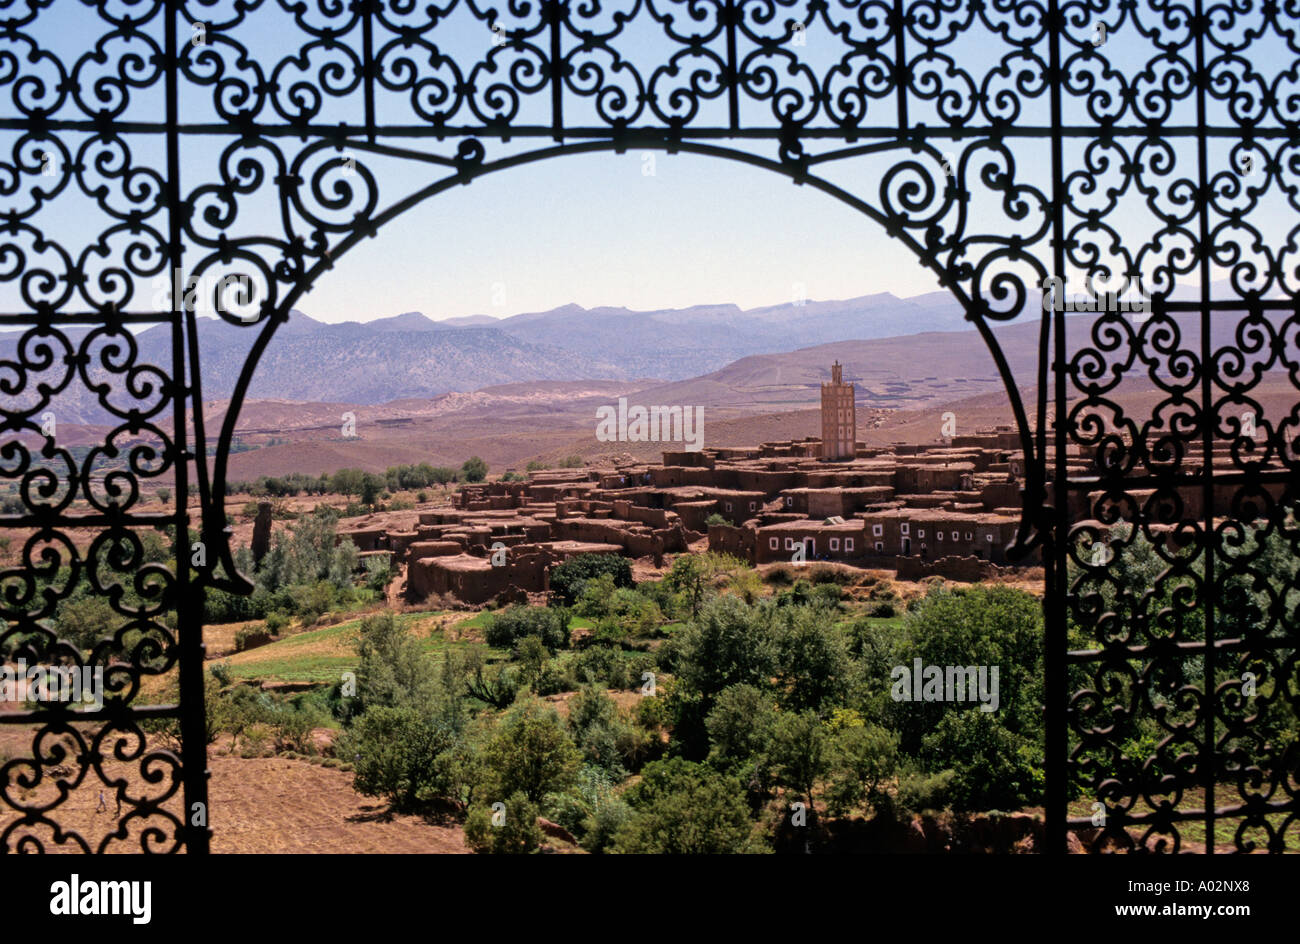 Marocco - Telouet, una Kasbah o città islamica, visto attraverso un ferro battuto grill / finestra Foto Stock